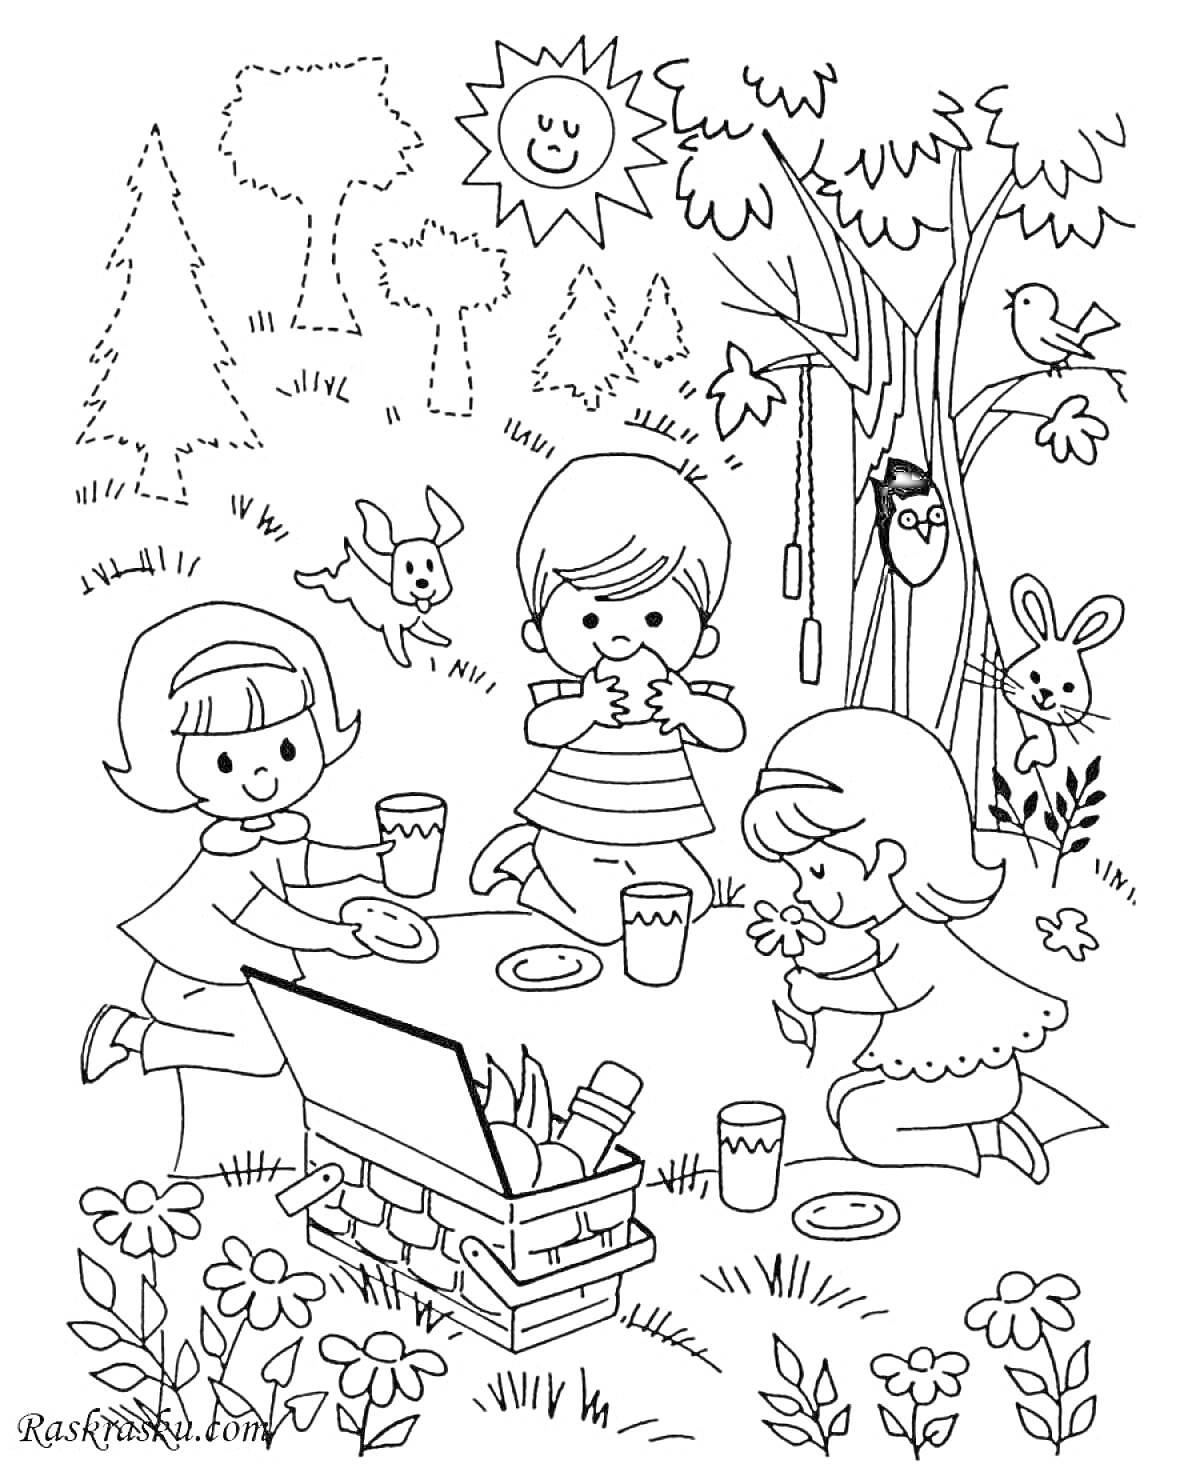 Раскраска Пикник детей в лесу с корзиной, солнцем, деревьями, цветами и животными